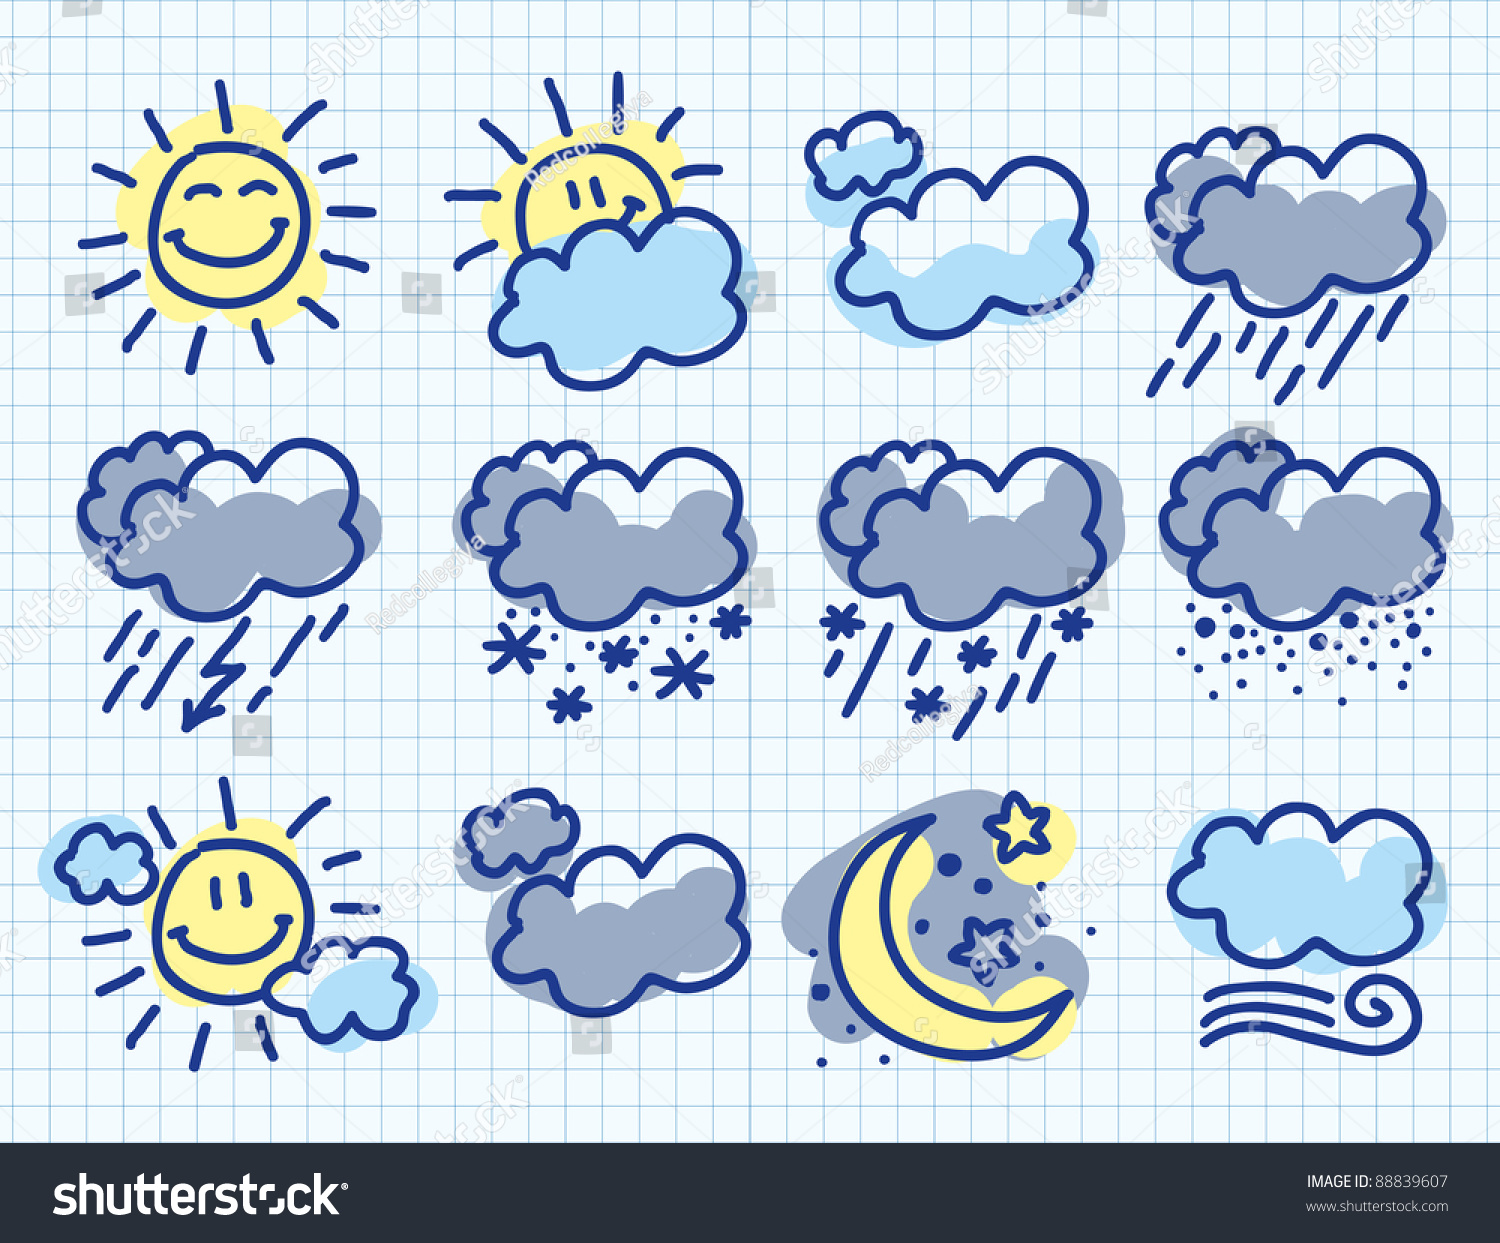 картинки погоды для дошкольников